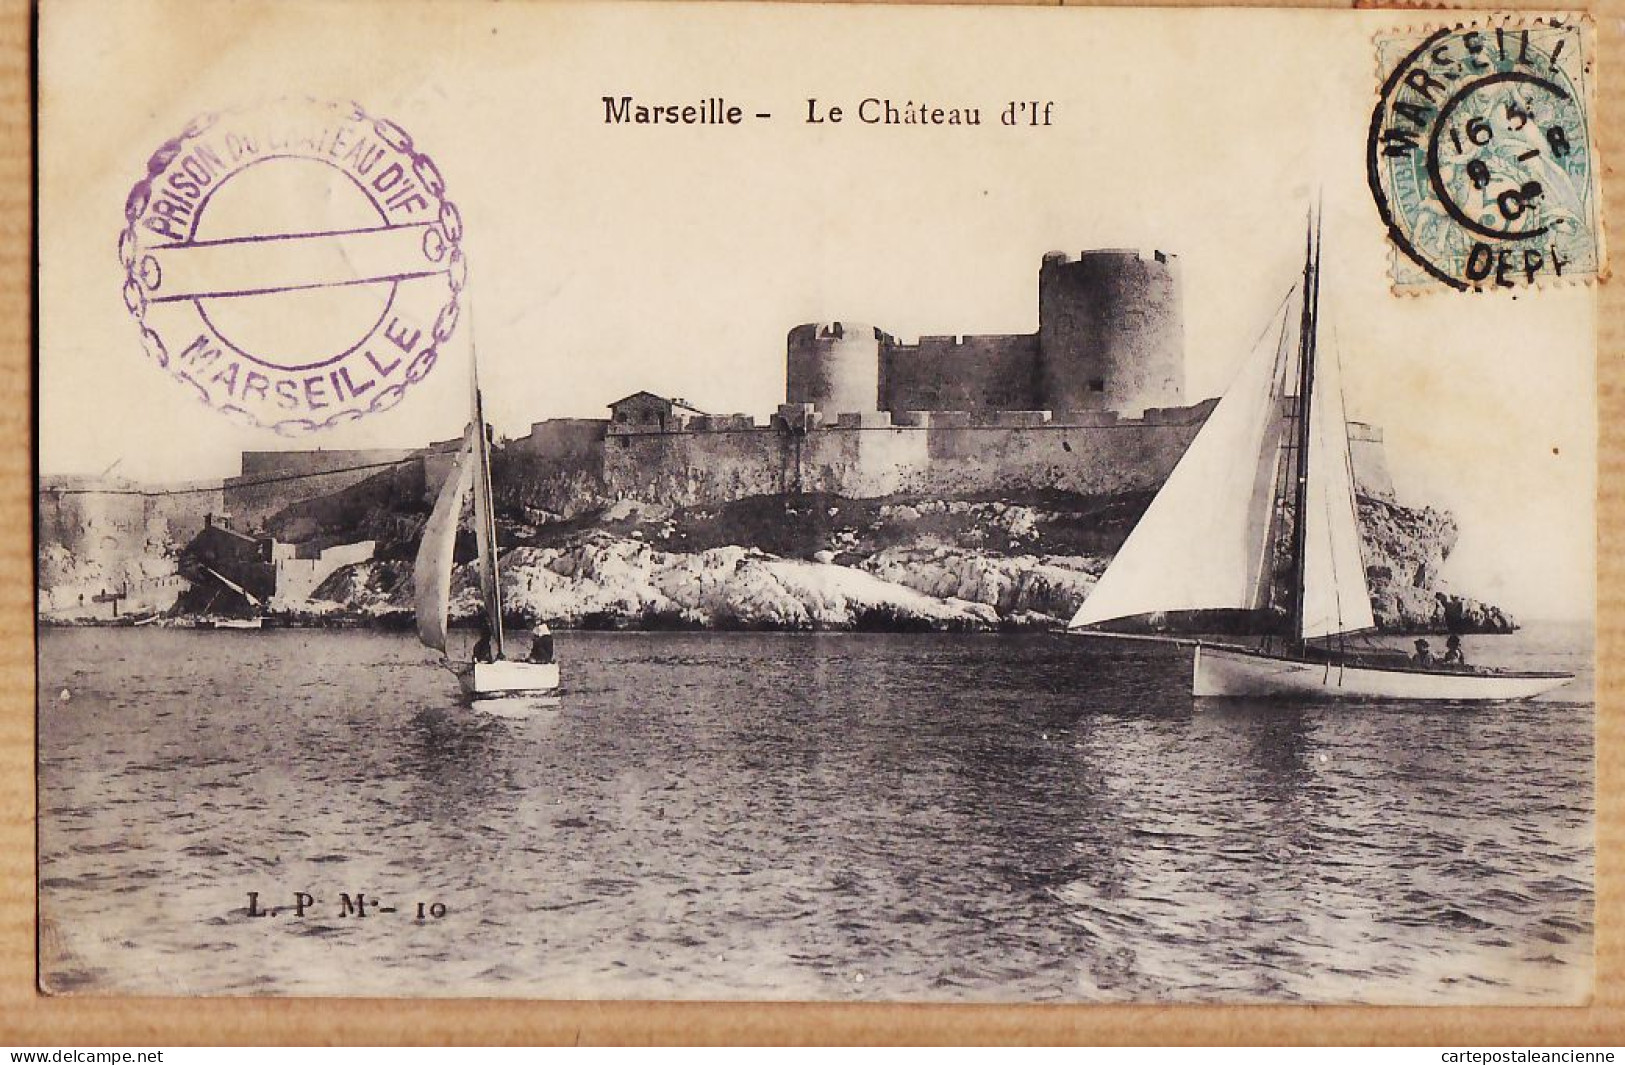 35124 / MARSEILLE Tampon Prison Du Le Château D'IF 1906 à Paul RIPAUX Montargis-L.P.M 10 - Château D'If, Frioul, Iles ...